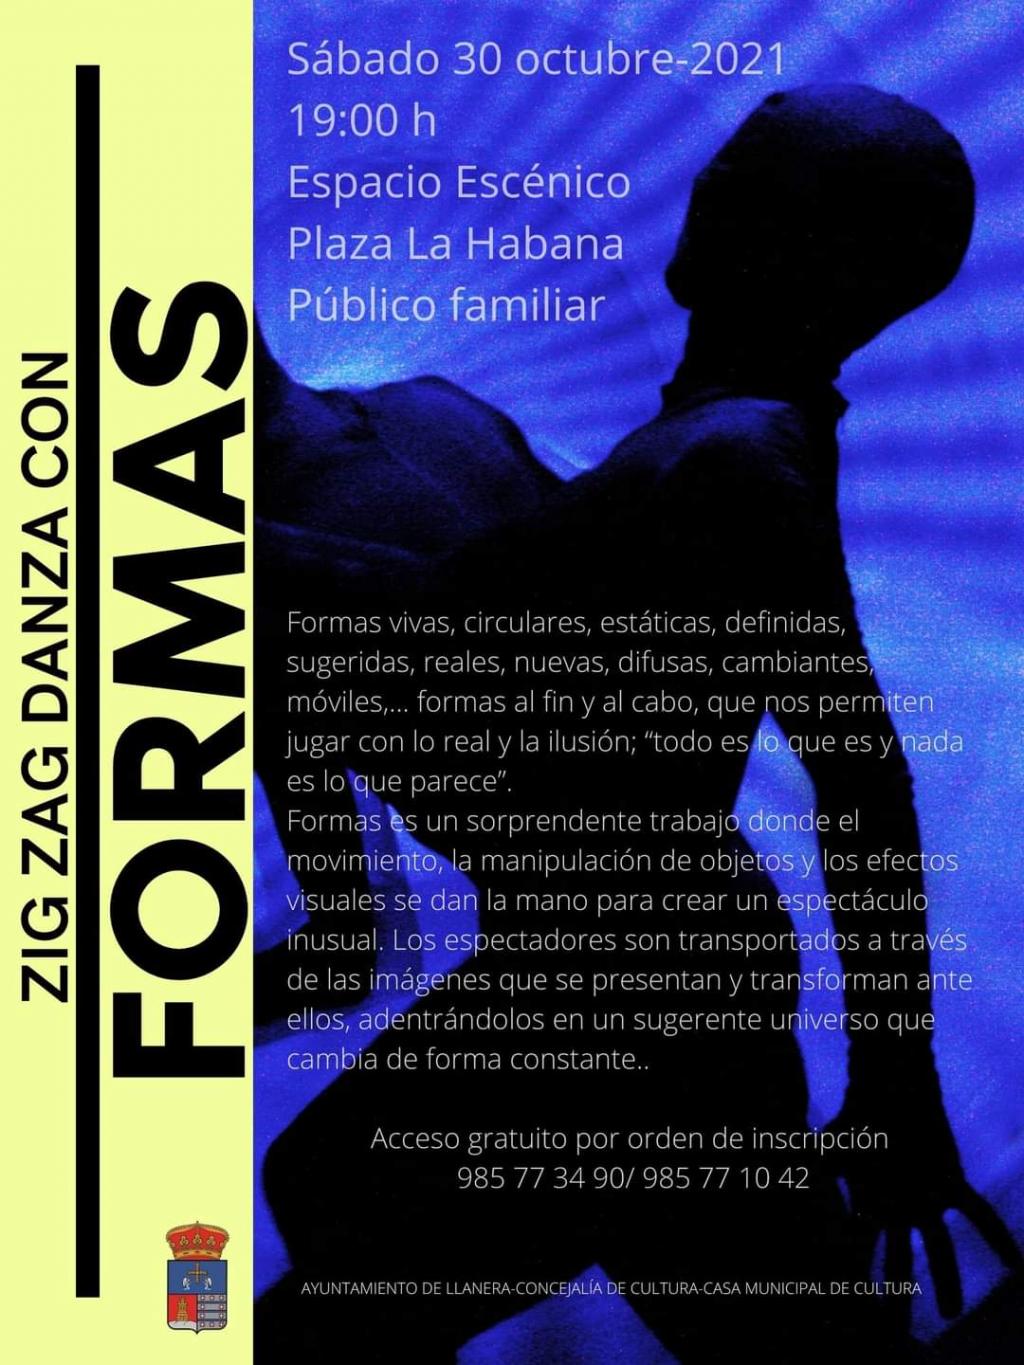 El Tapin - Zig Zag Danza ofrecerá su espectáculo "Formas" en la Plaza de La Habana el sábado 30 de octubre a las 19 horas